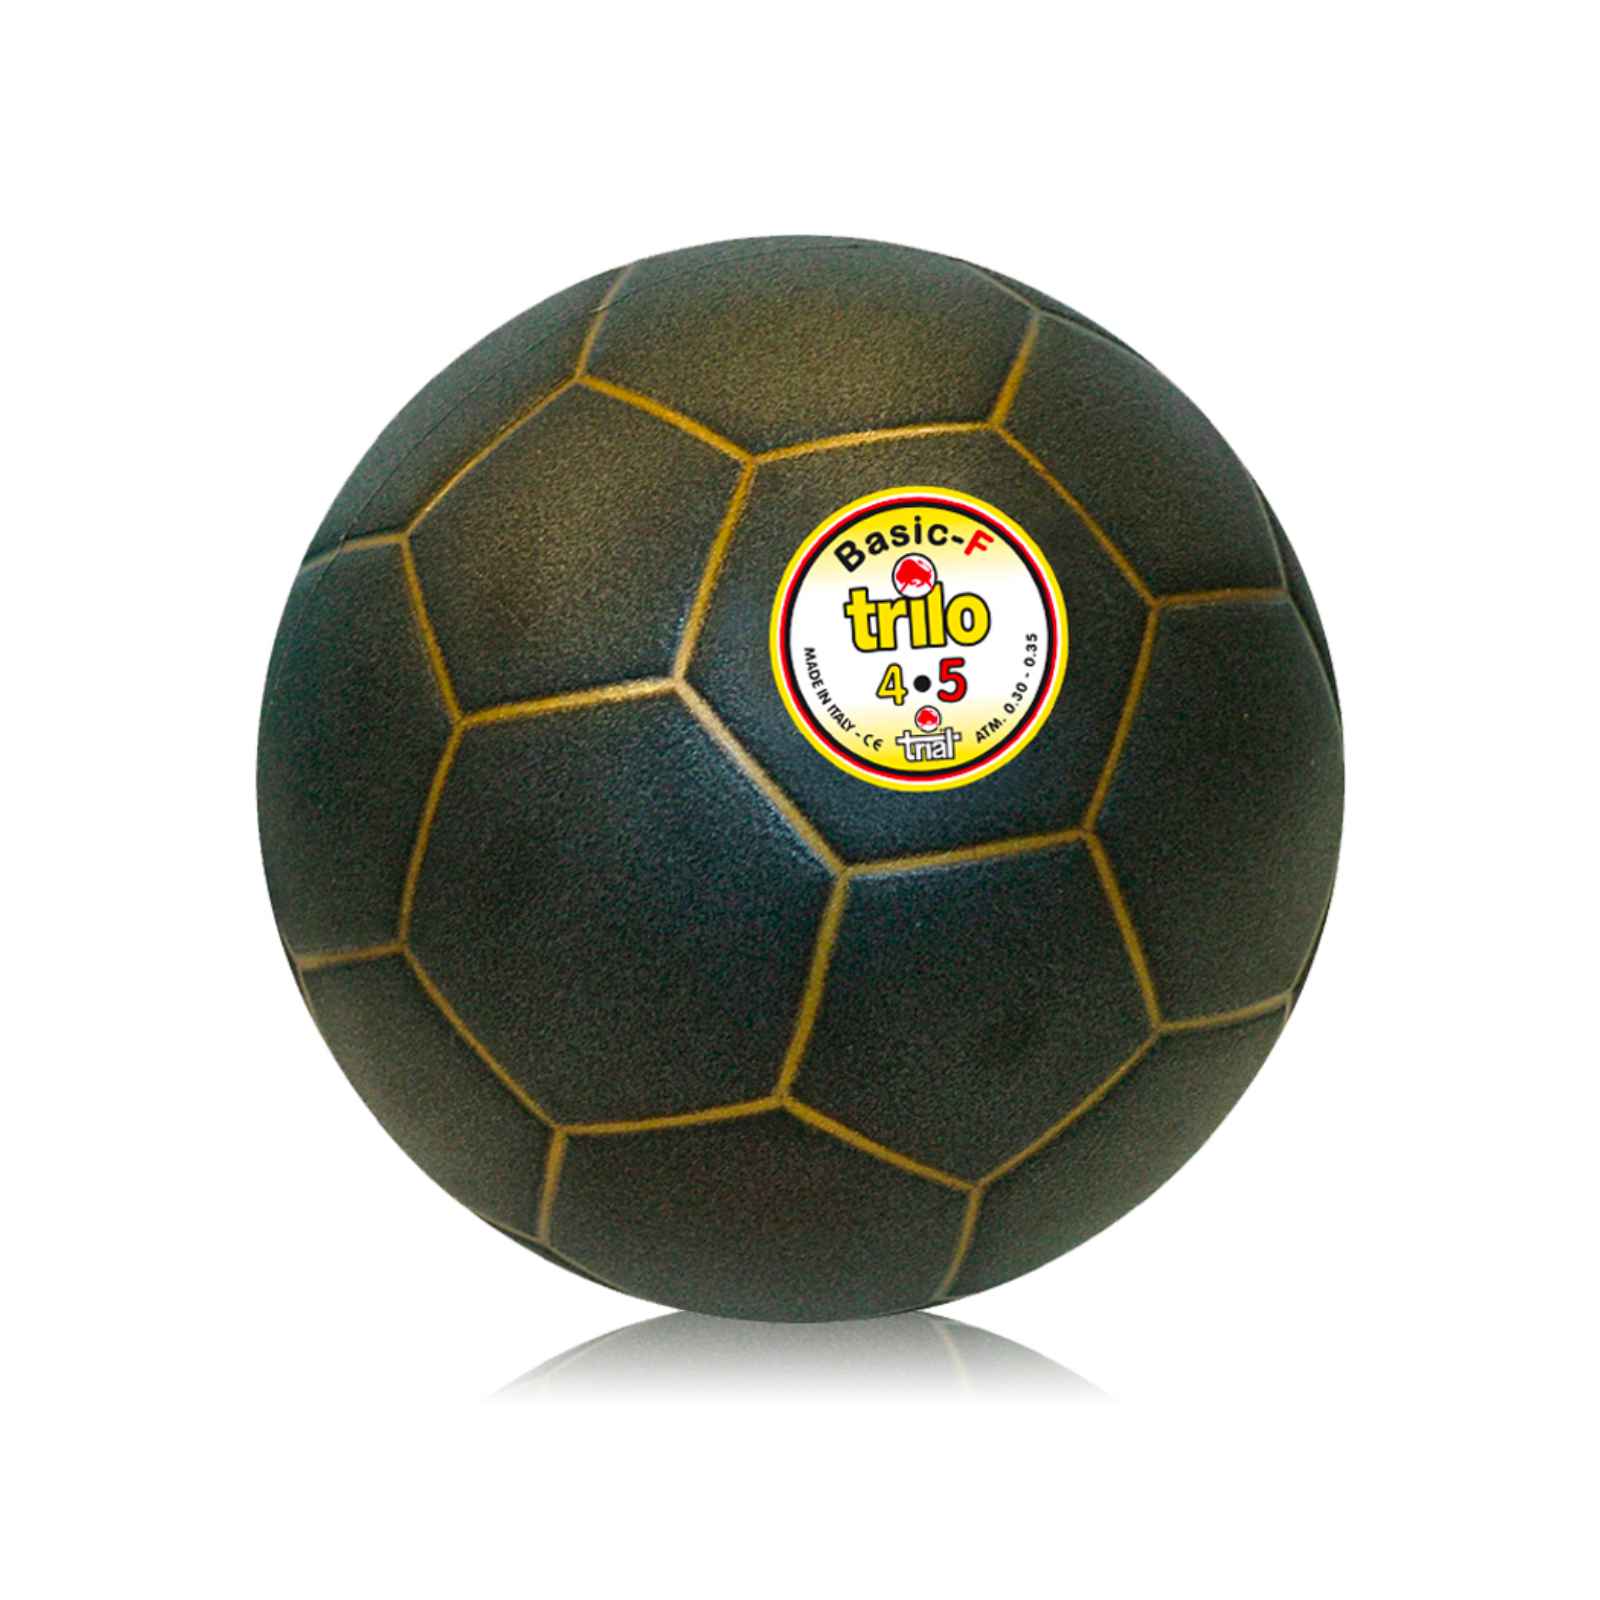 Trilo – Pallone Calcio Basic 370 gr - Studiato per le Attività Tecniche come Testa, Tiri e Passaggi